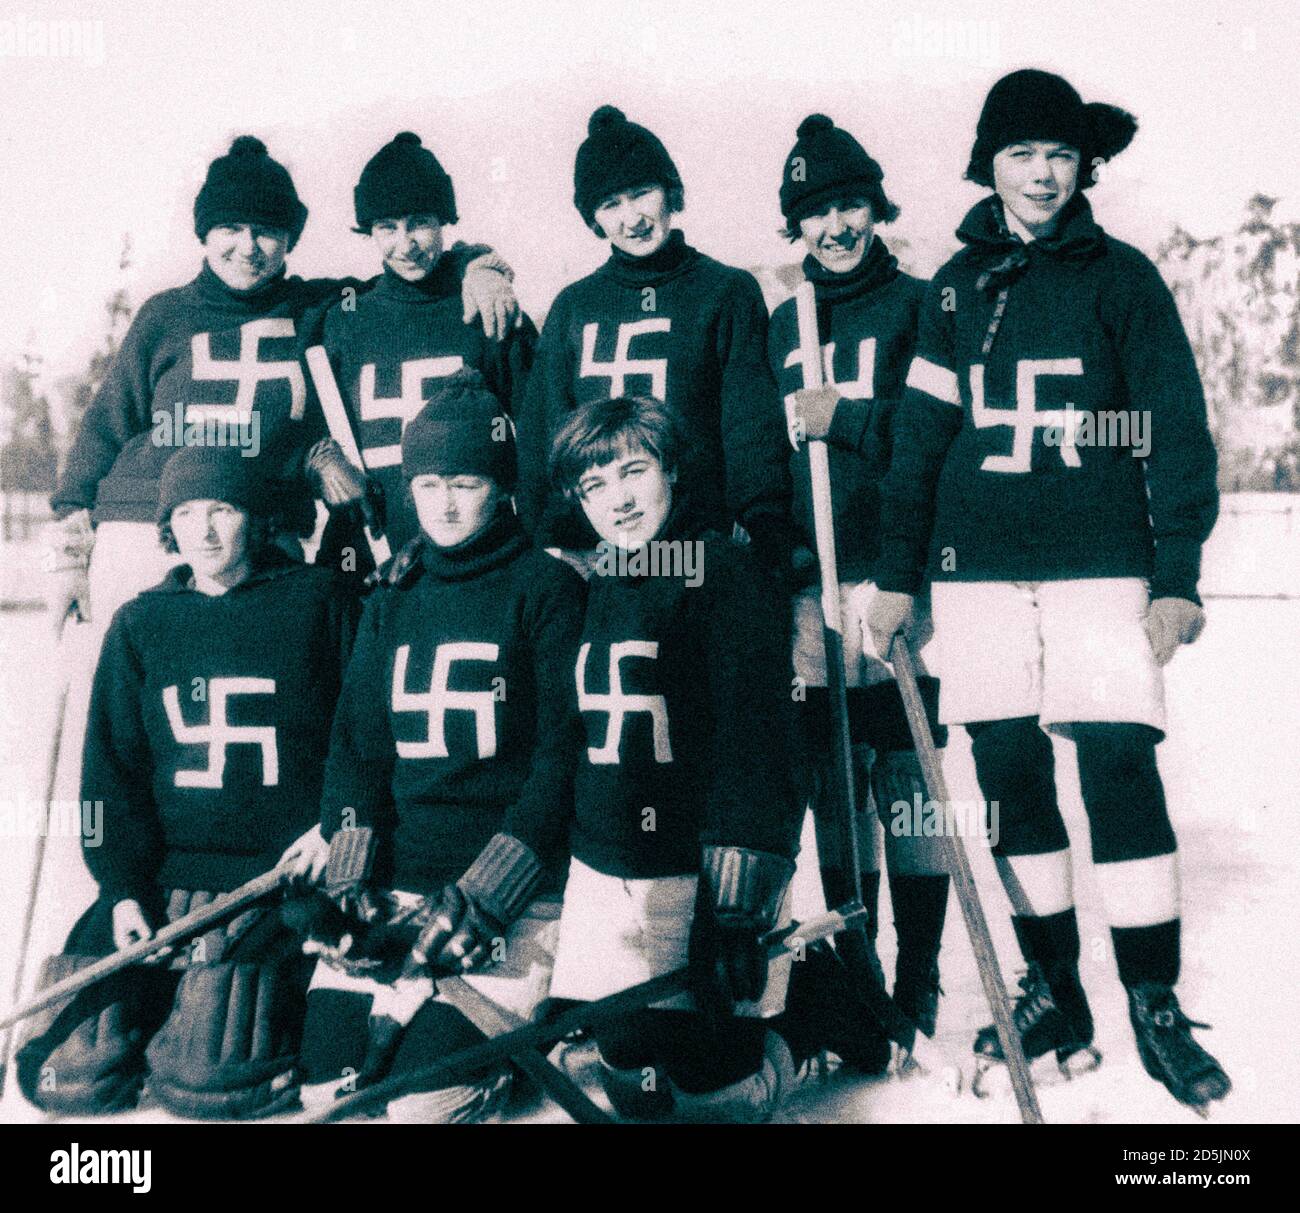 Retro-Foto des Fernie Swastikas Eishokey Teams. Kanada. 1920 die Fernie Swastikas waren eine Frauen-Hockey-Mannschaft, die 1922 in Fernie, Br Stockfoto